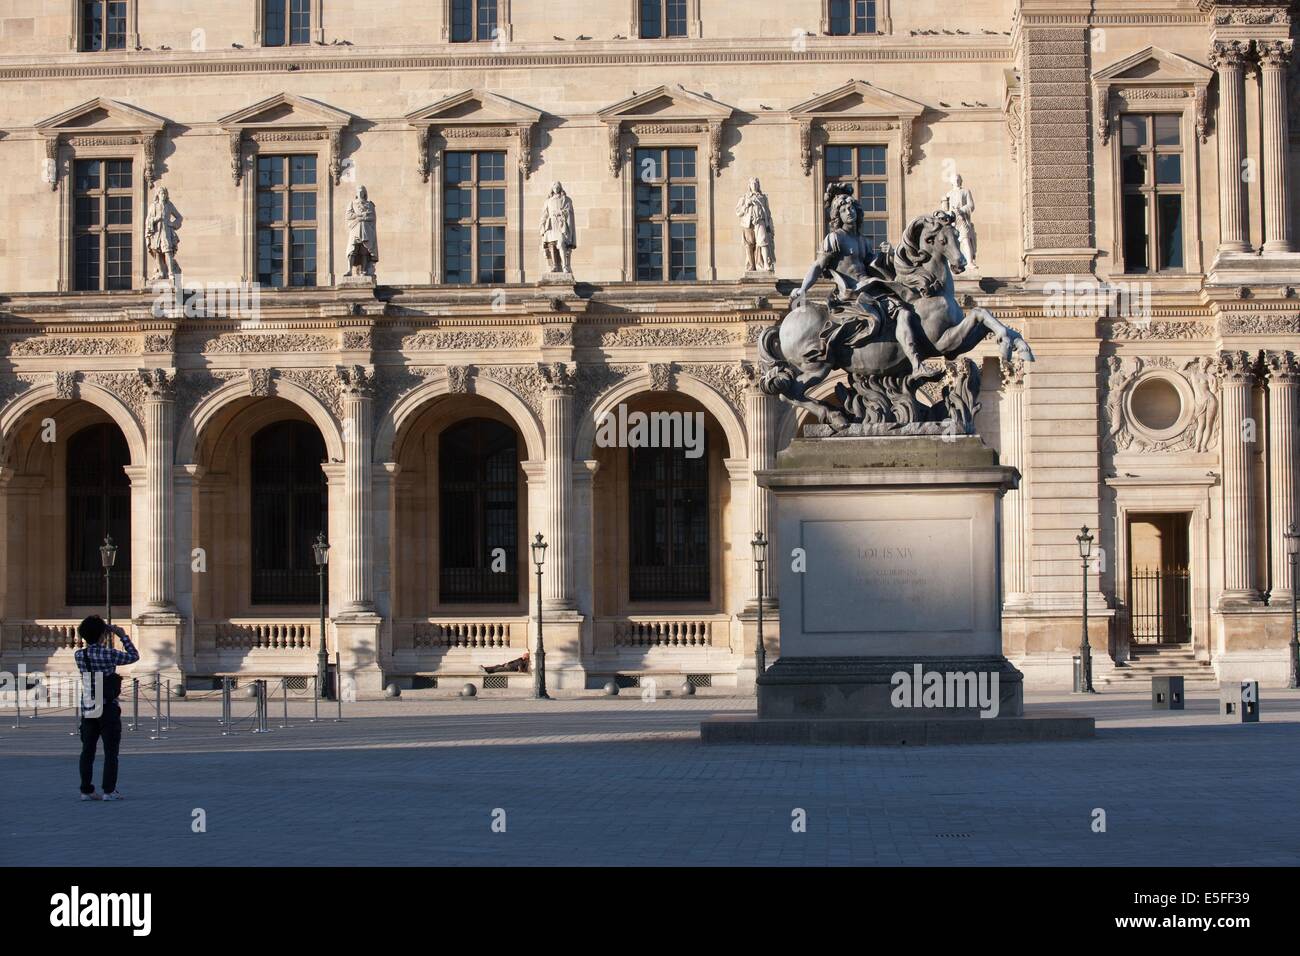 France, Region Ile de France, Paris 1er arrondissement, Musee du Louvre, cour de la Pyramide, statue equestre de louis 14 par le bernin, Stock Photo